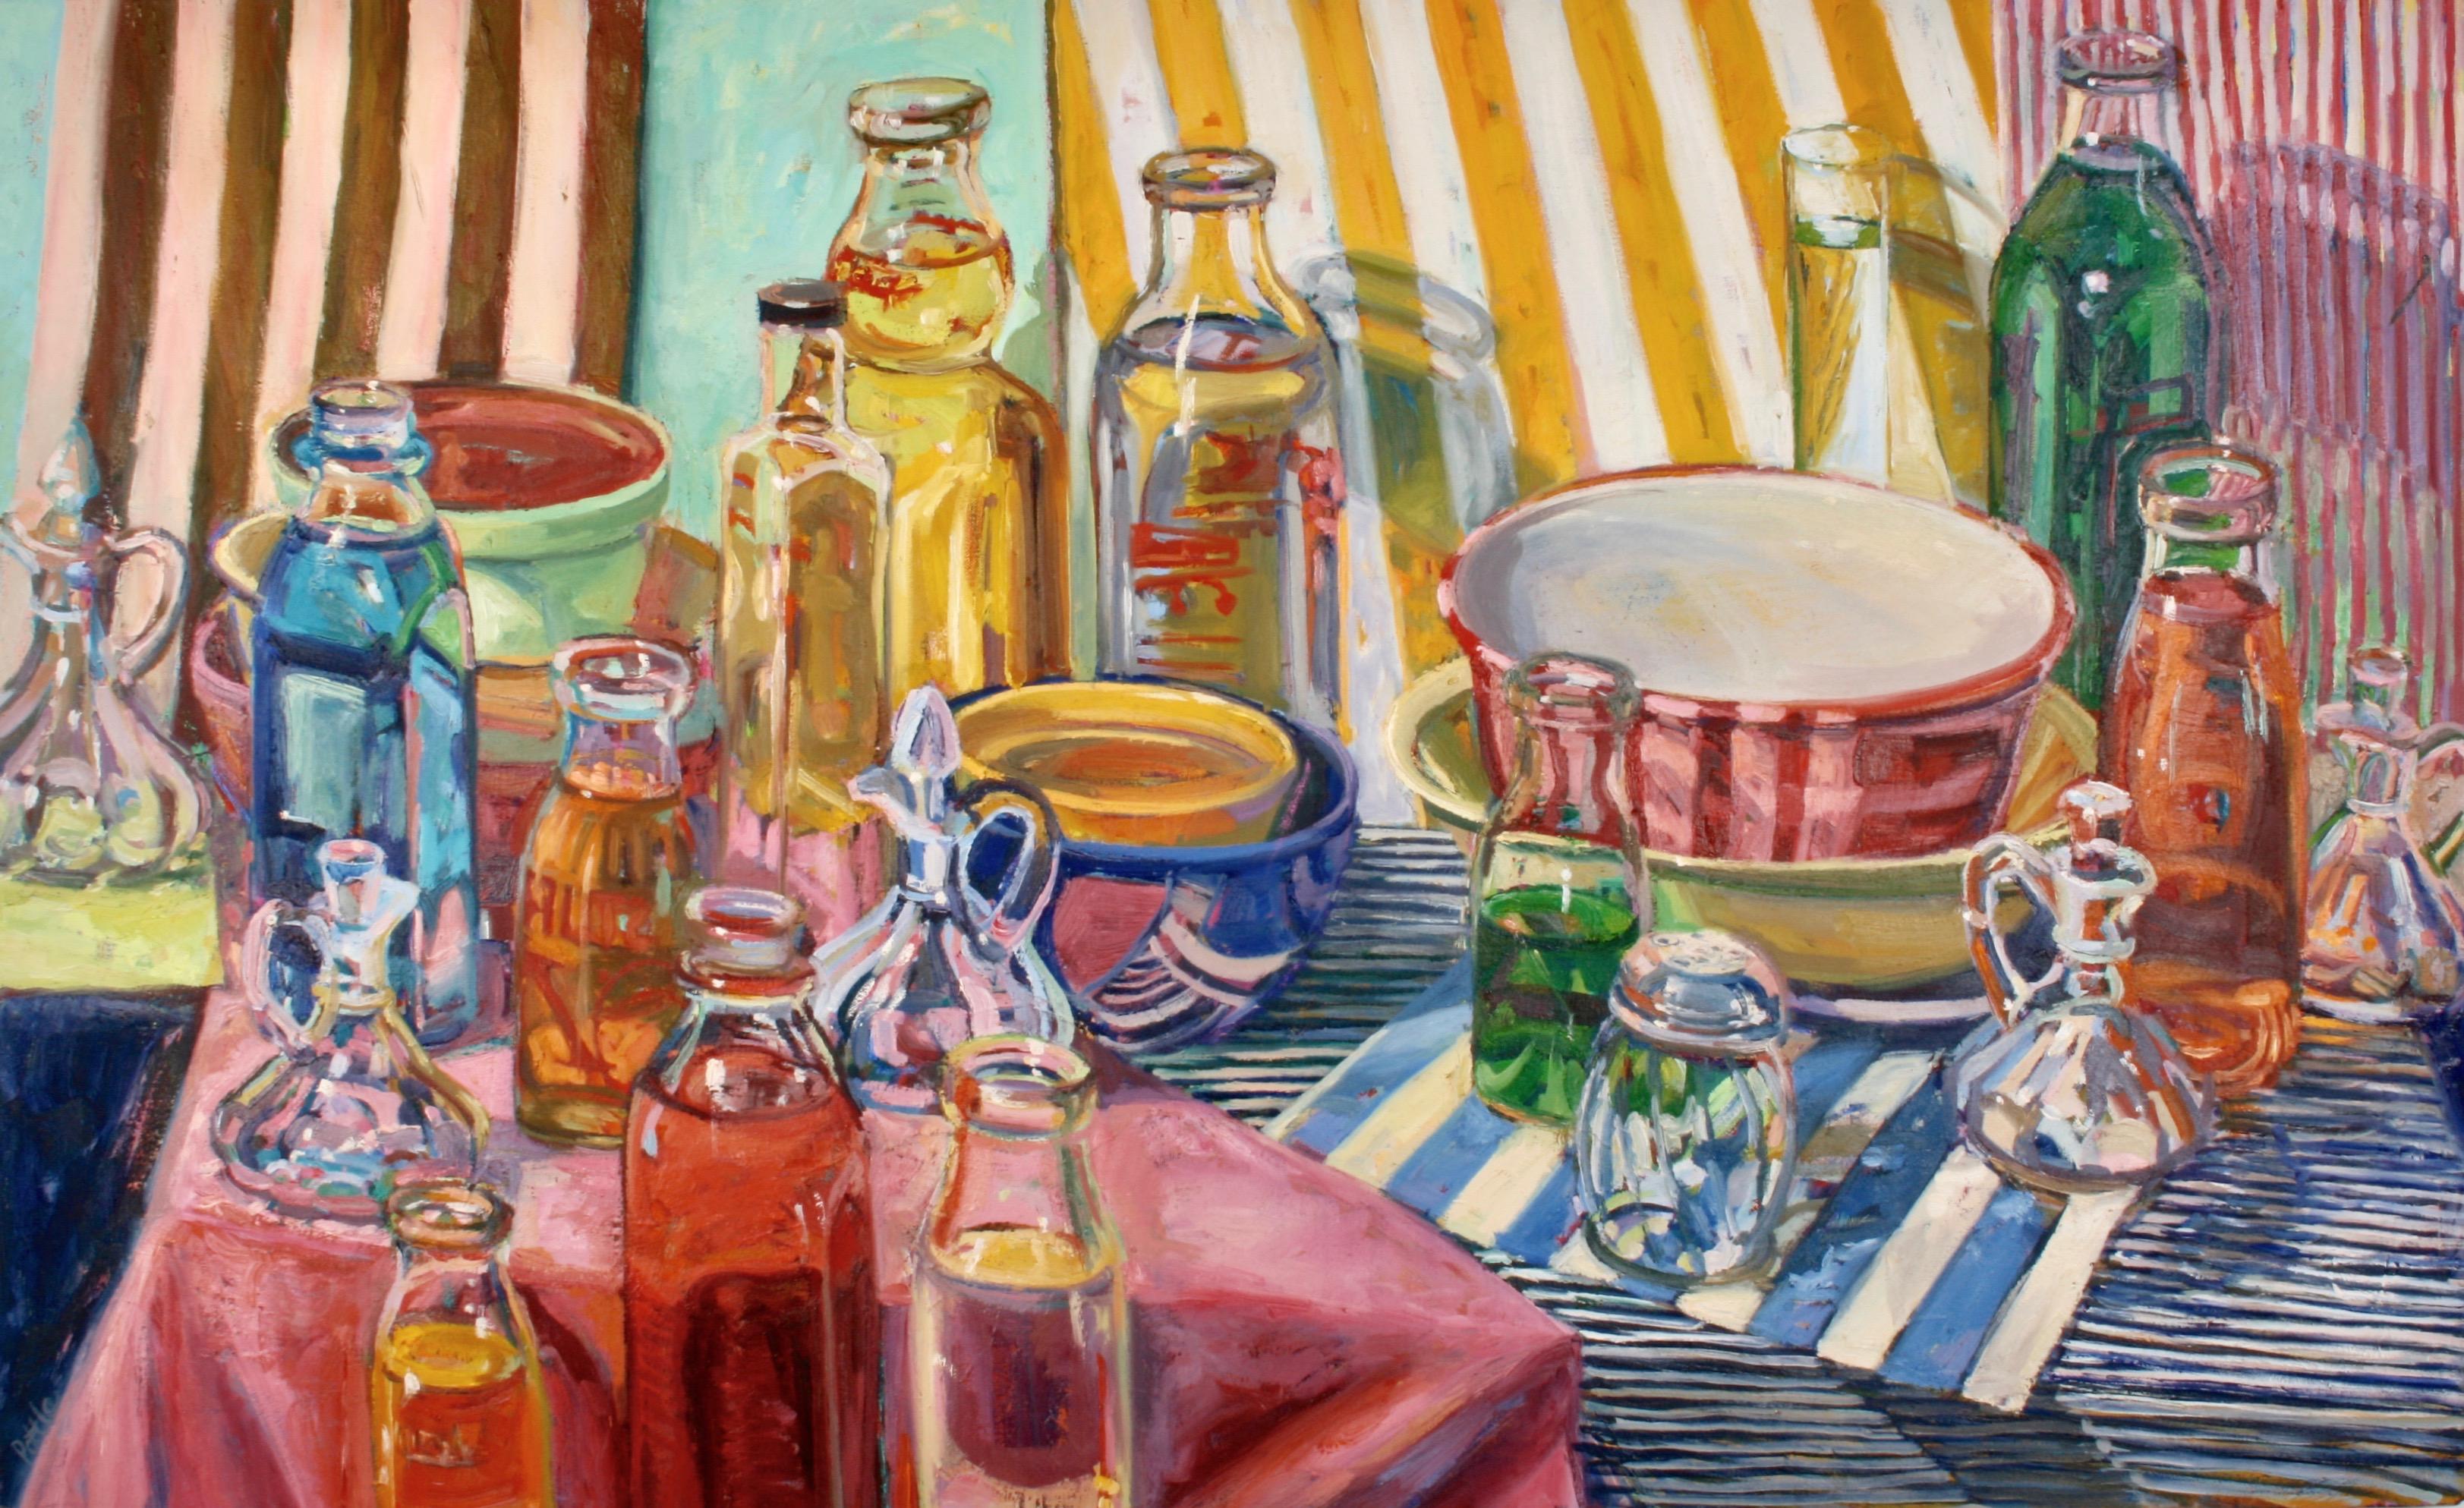 Jill Pottle Still-Life Painting - "Milk Bottles", contemporary, still life, bold colors, retro, oil painting